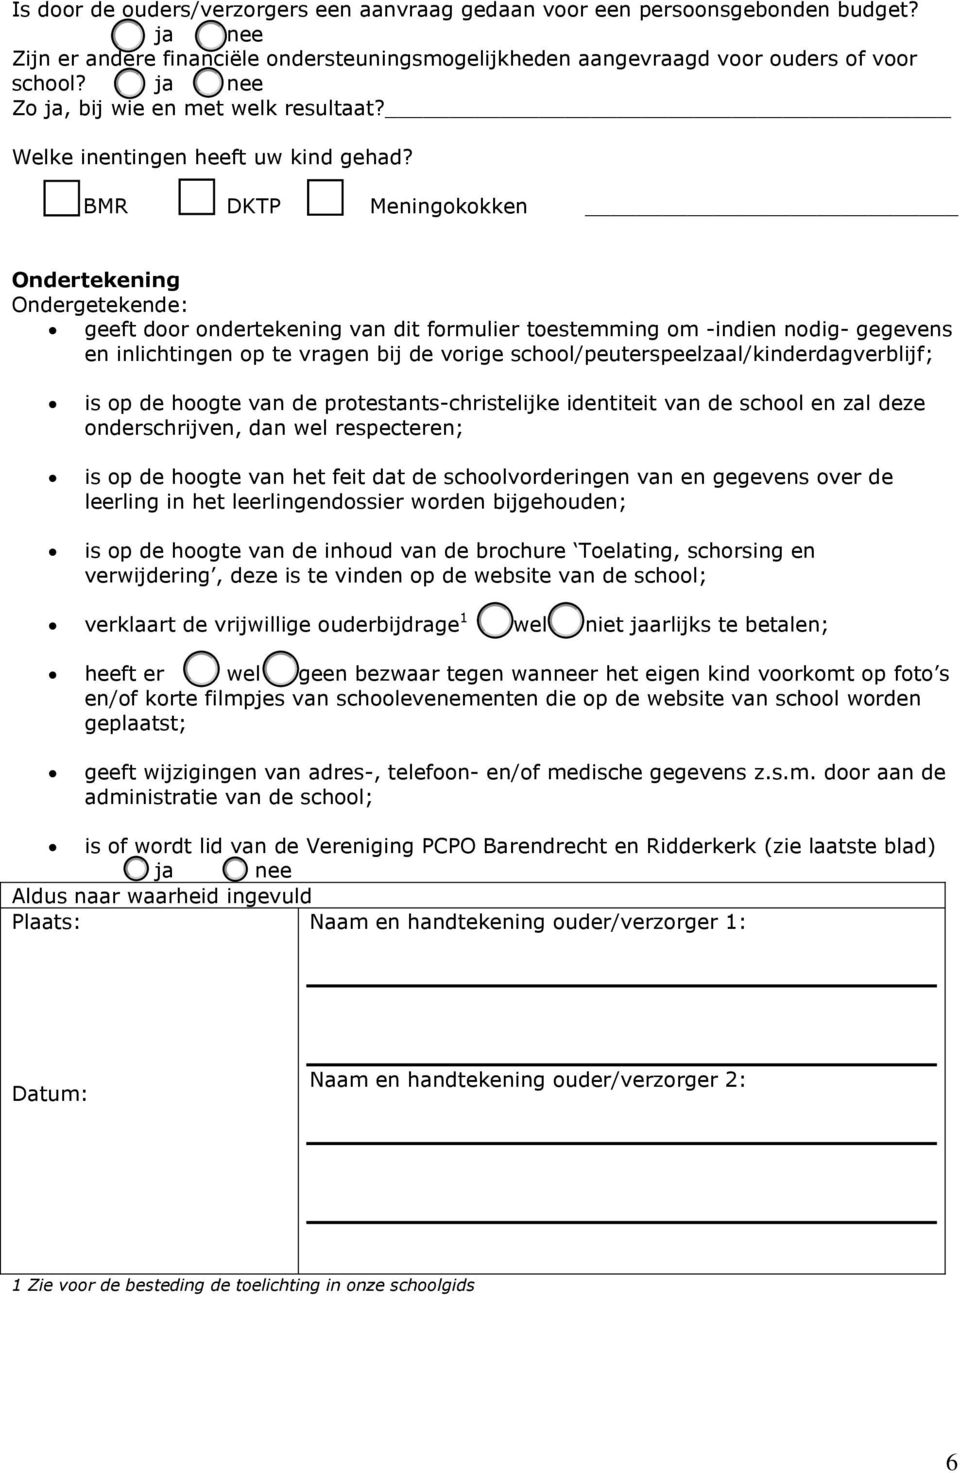 BMR DKTP Meningokokken Ondertekening Ondergetekende: geeft door ondertekening van dit formulier toestemming om -indien nodig- gegevens en inlichtingen op te vragen bij de vorige